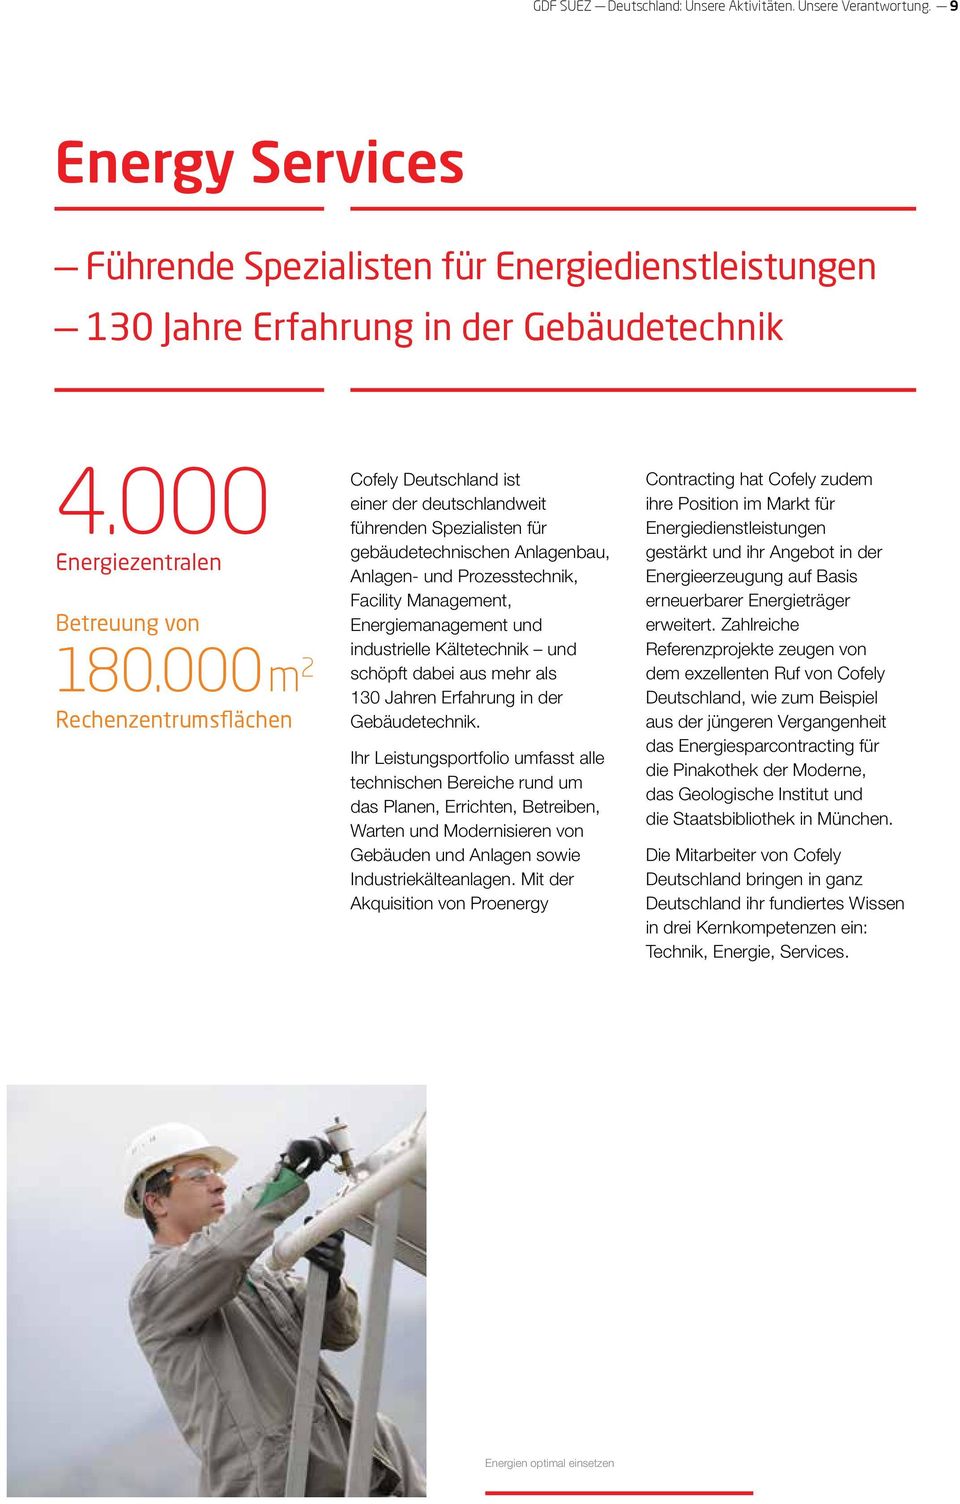 000 m 2 Rechenzentrumsflächen Cofely Deutschland ist einer der deutschlandweit führenden Spezialisten für gebäudetechnischen Anlagenbau, Anlagen- und Prozesstechnik, Facility Management,